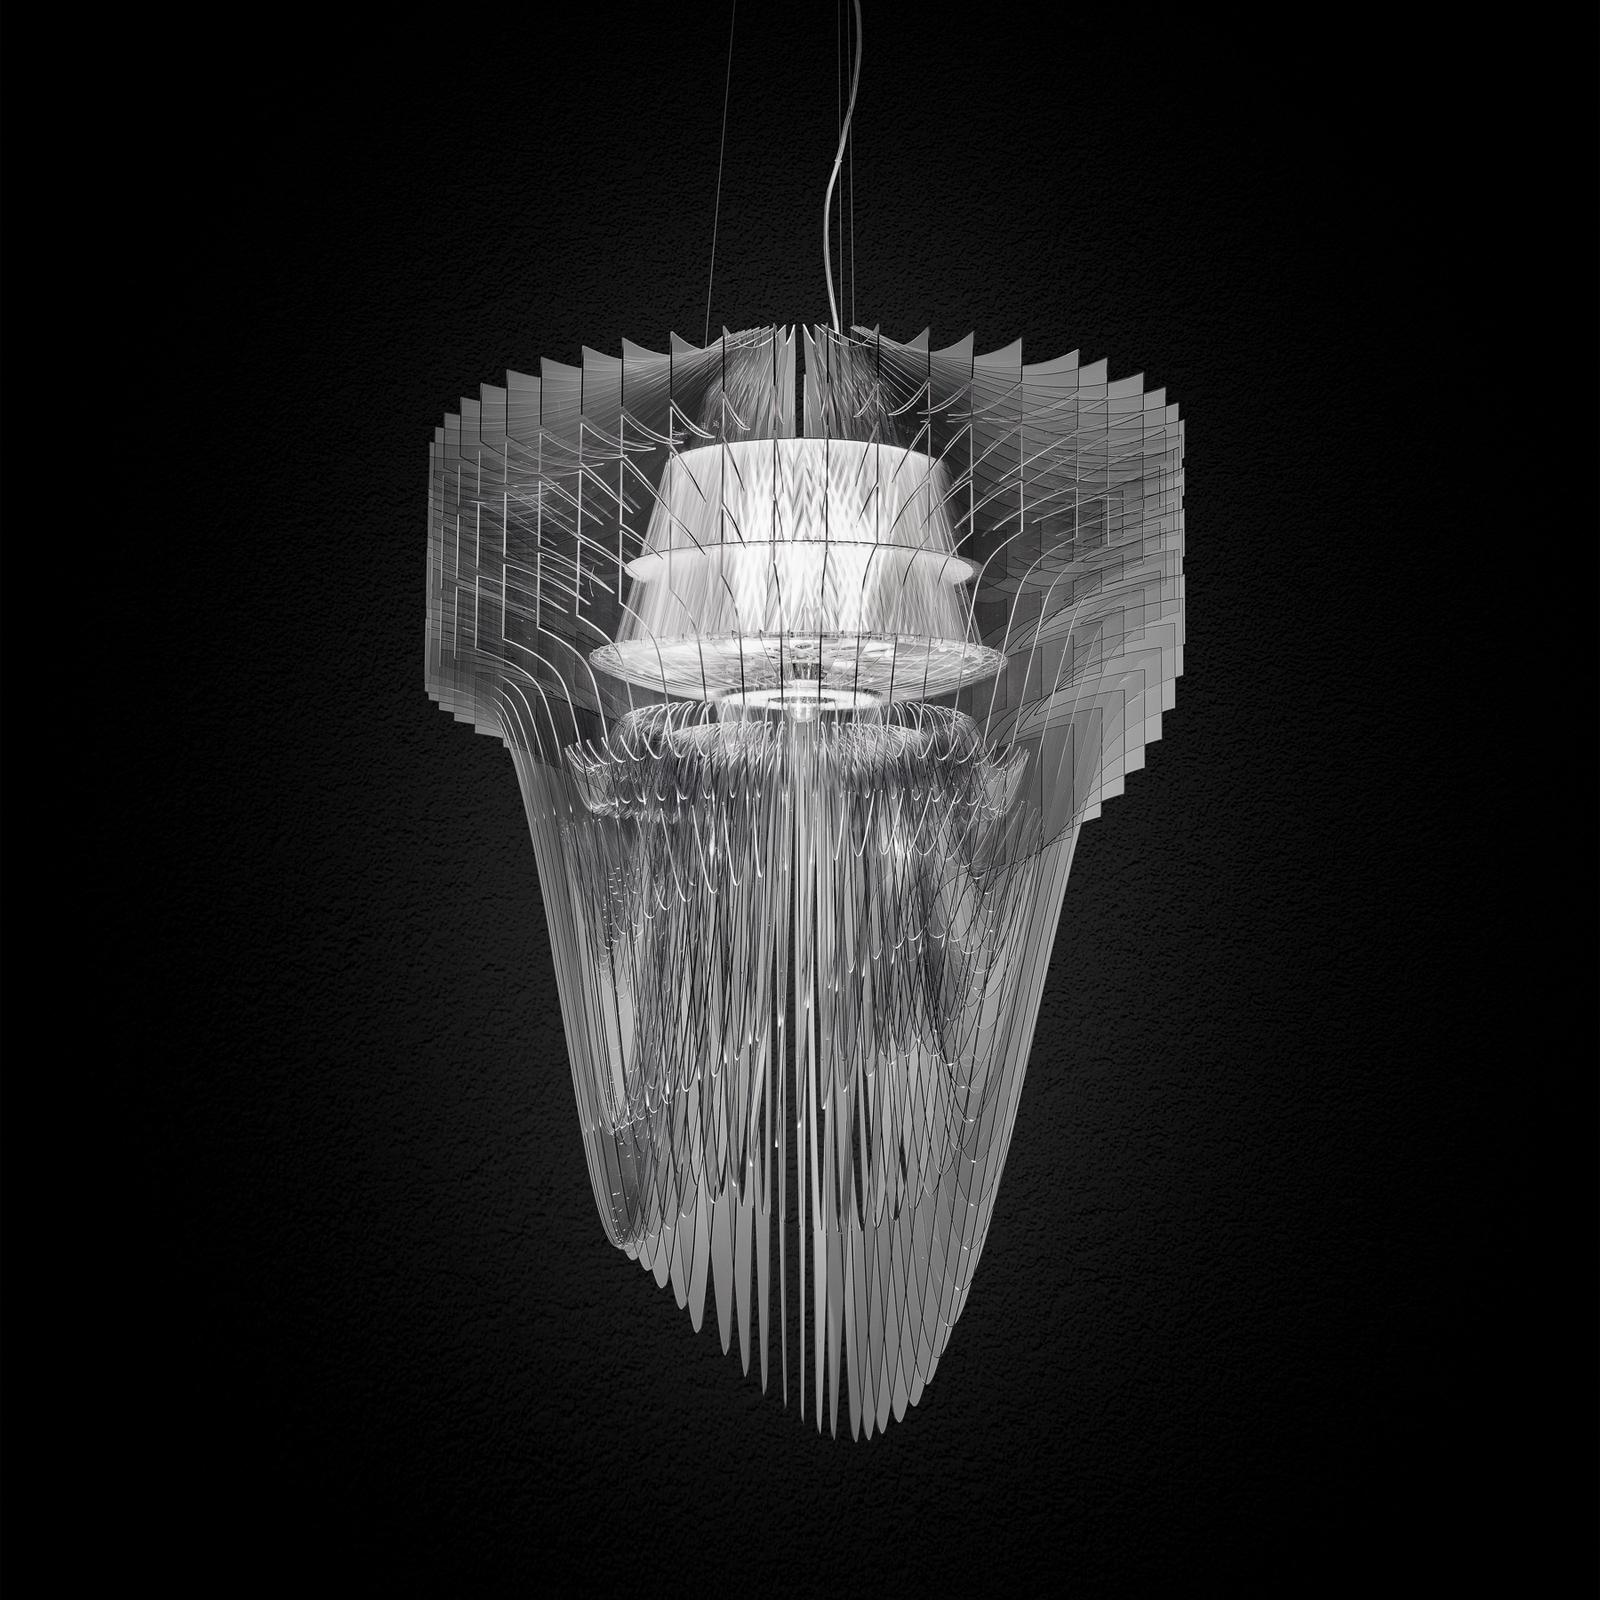 Lampa wisząca Slamp Aria M, przezroczysta, Ø 60 cm